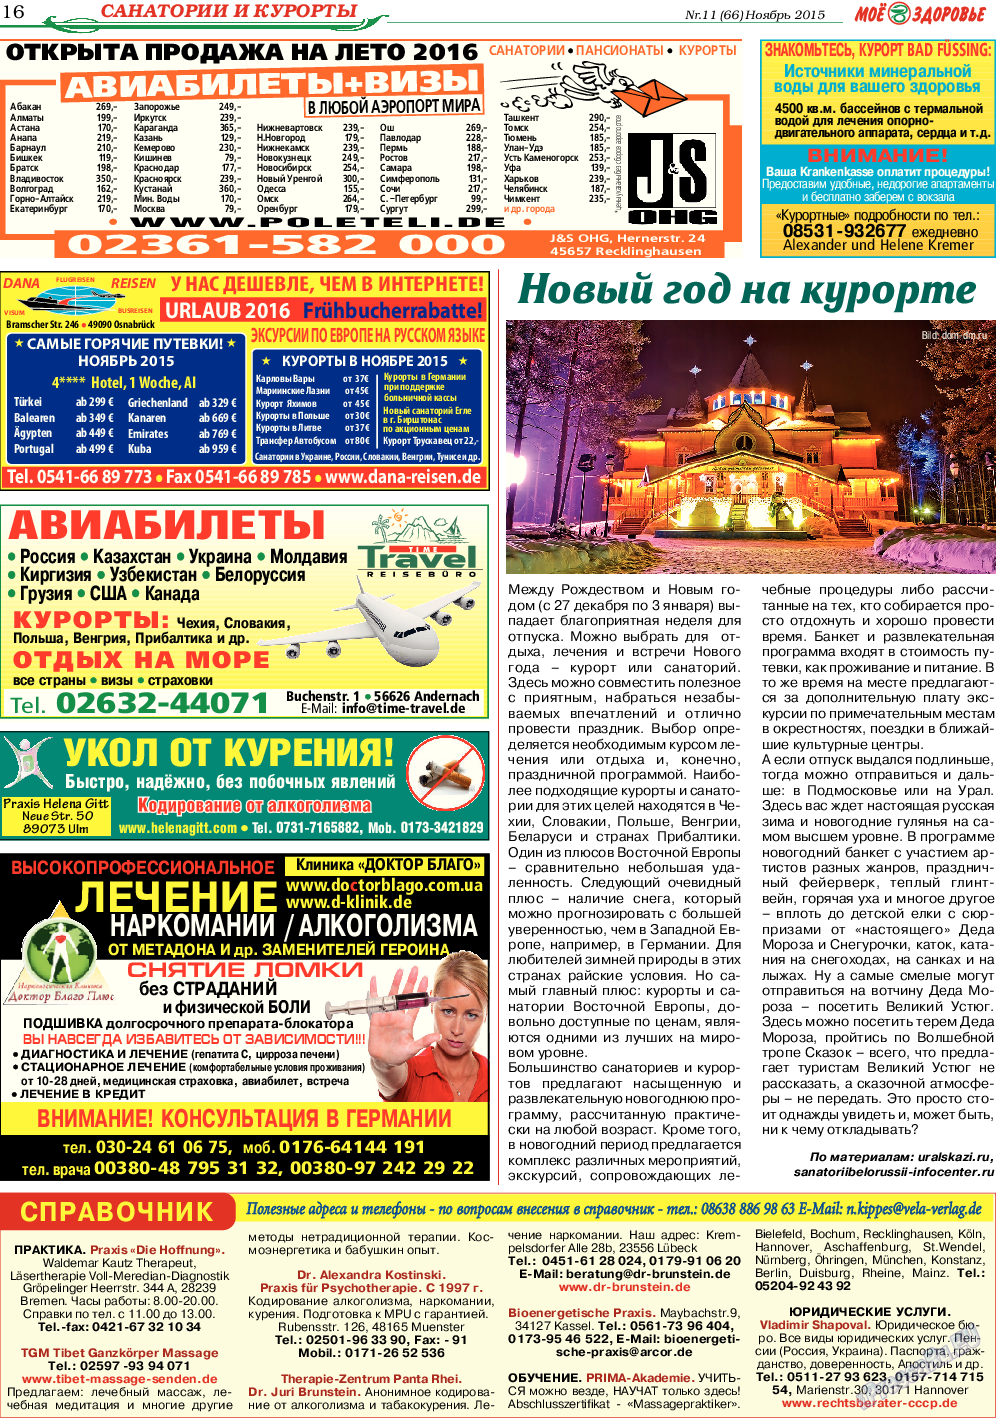 Кругозор, газета. 2015 №11 стр.16